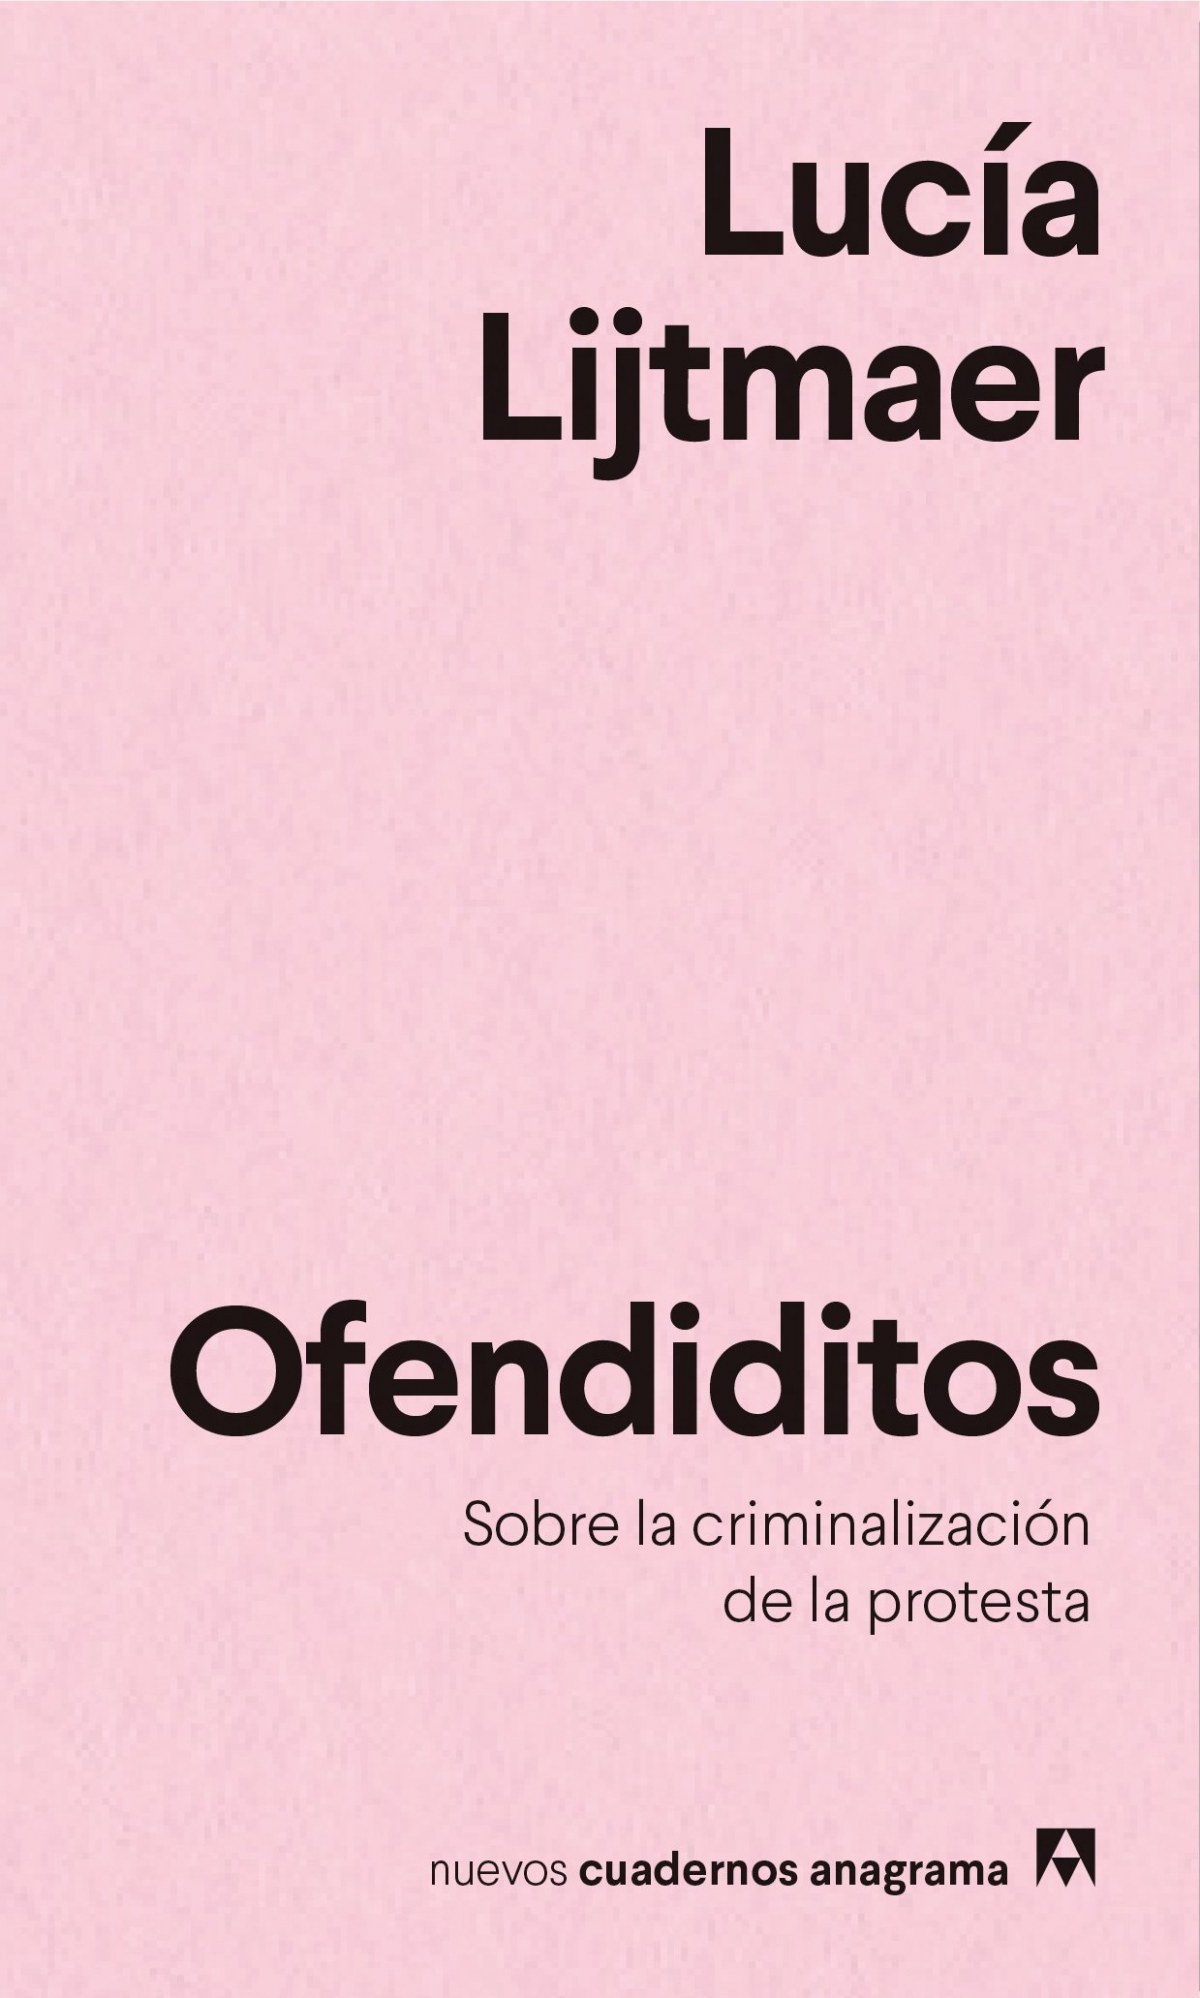 OFENDIDITOS Un análisis de la criminalización de la protesta - Lijtmaer, Lucía